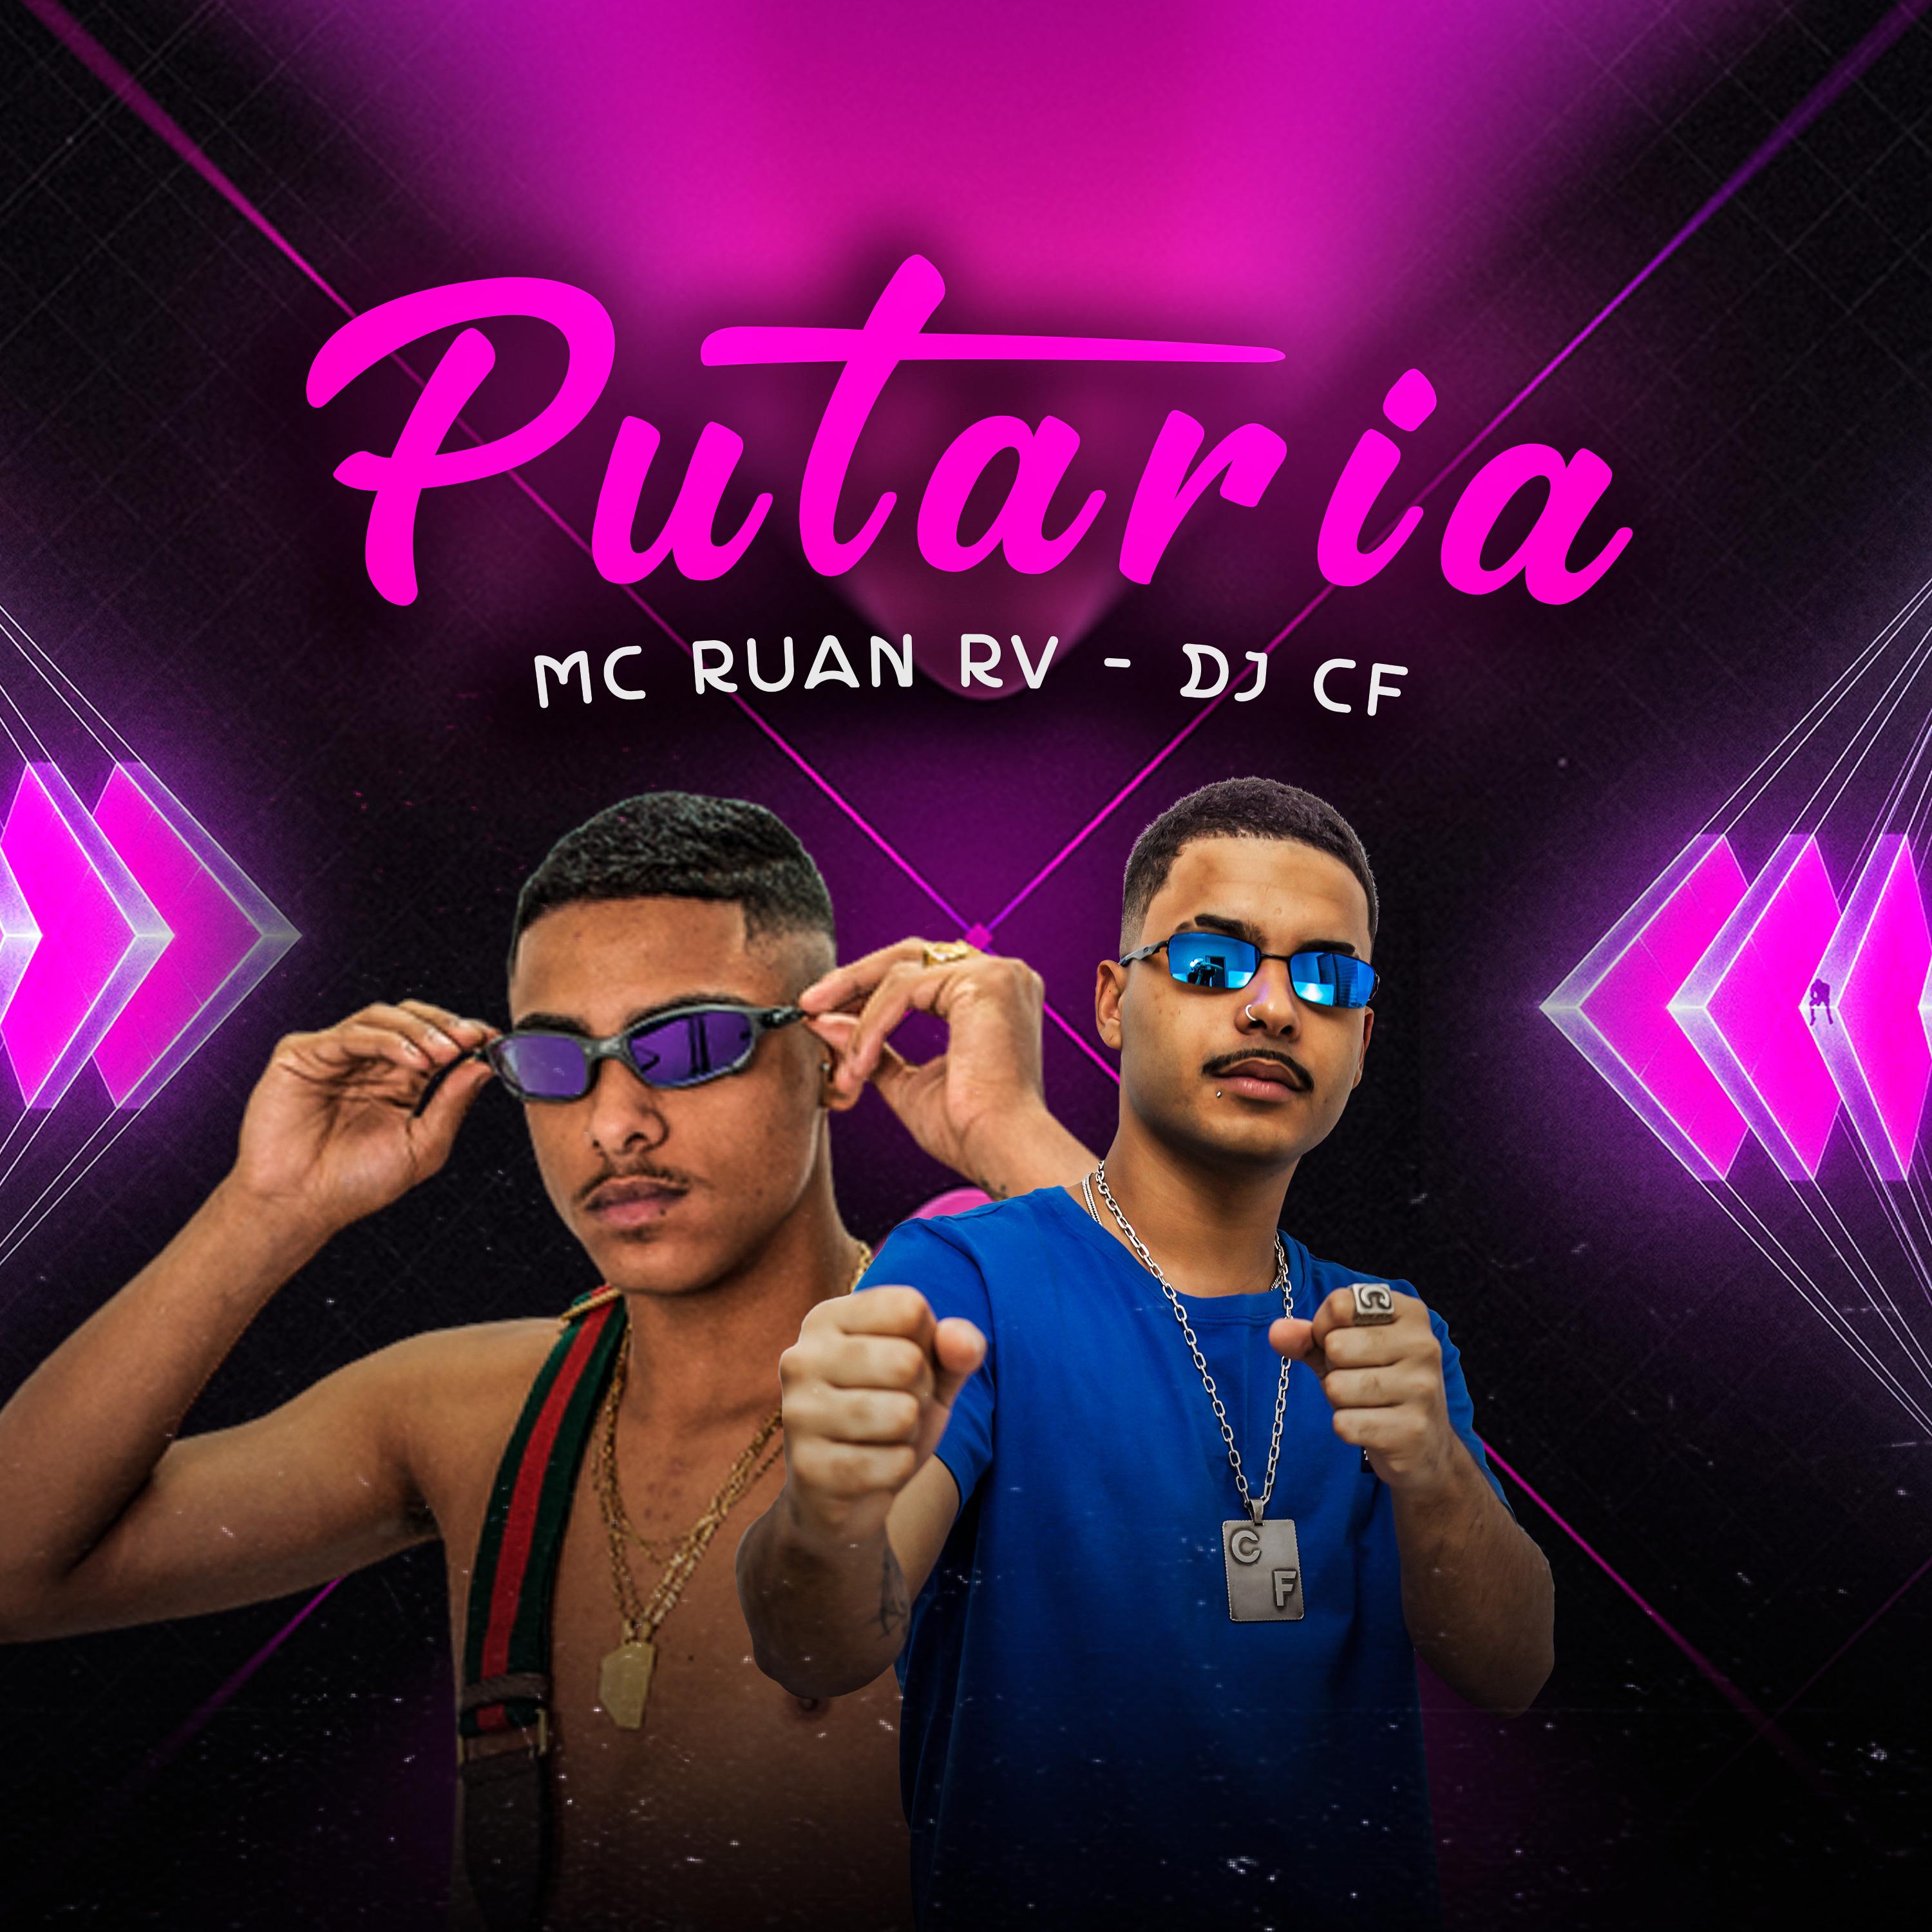 Постер альбома Putaria